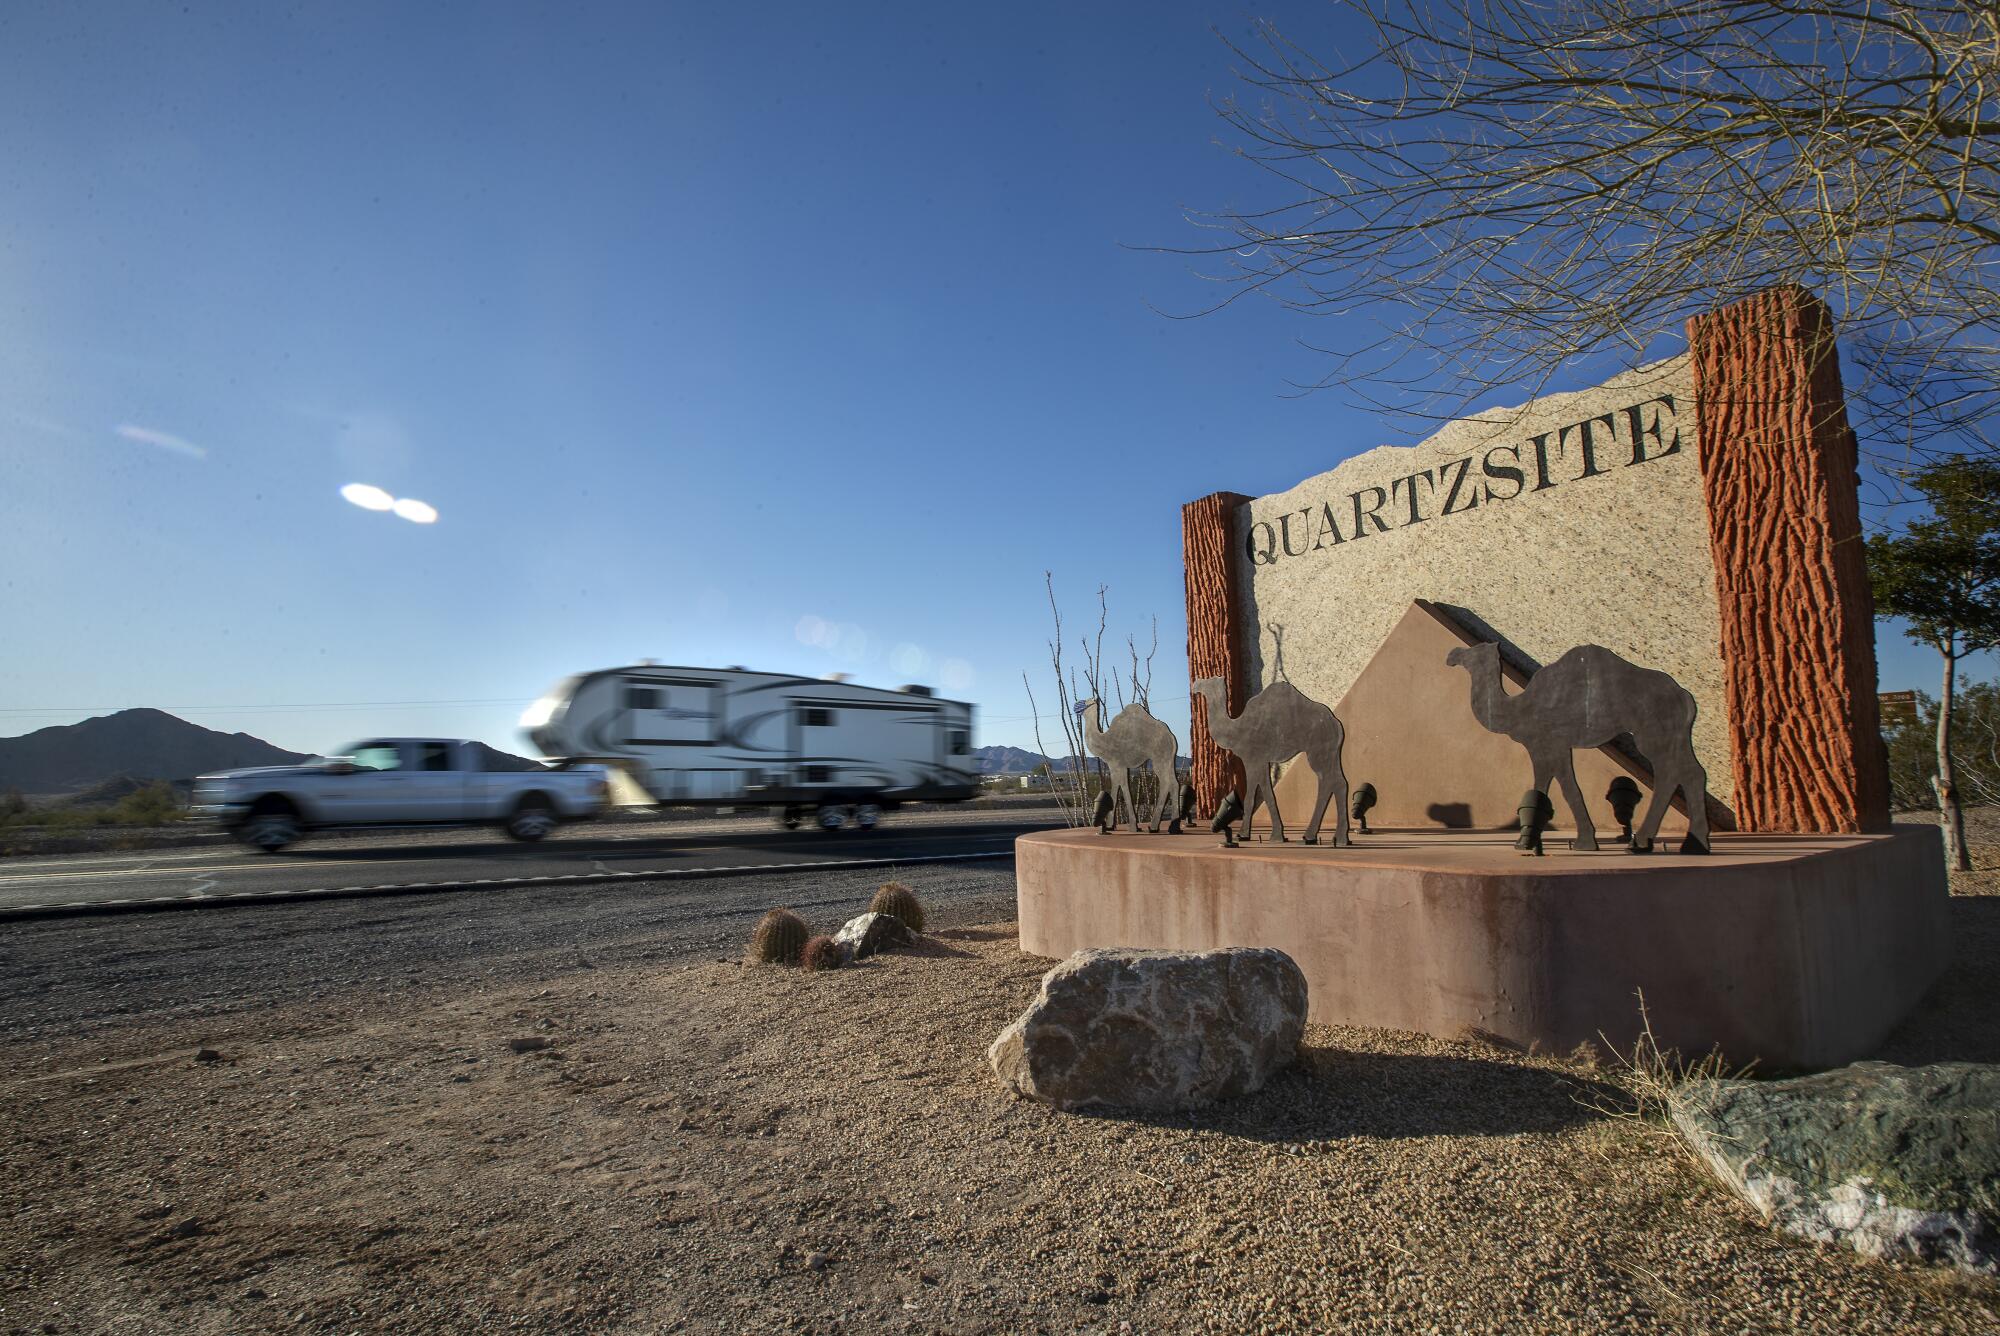 A vehicle drives past a sign for Quartzsite, Ariz. 